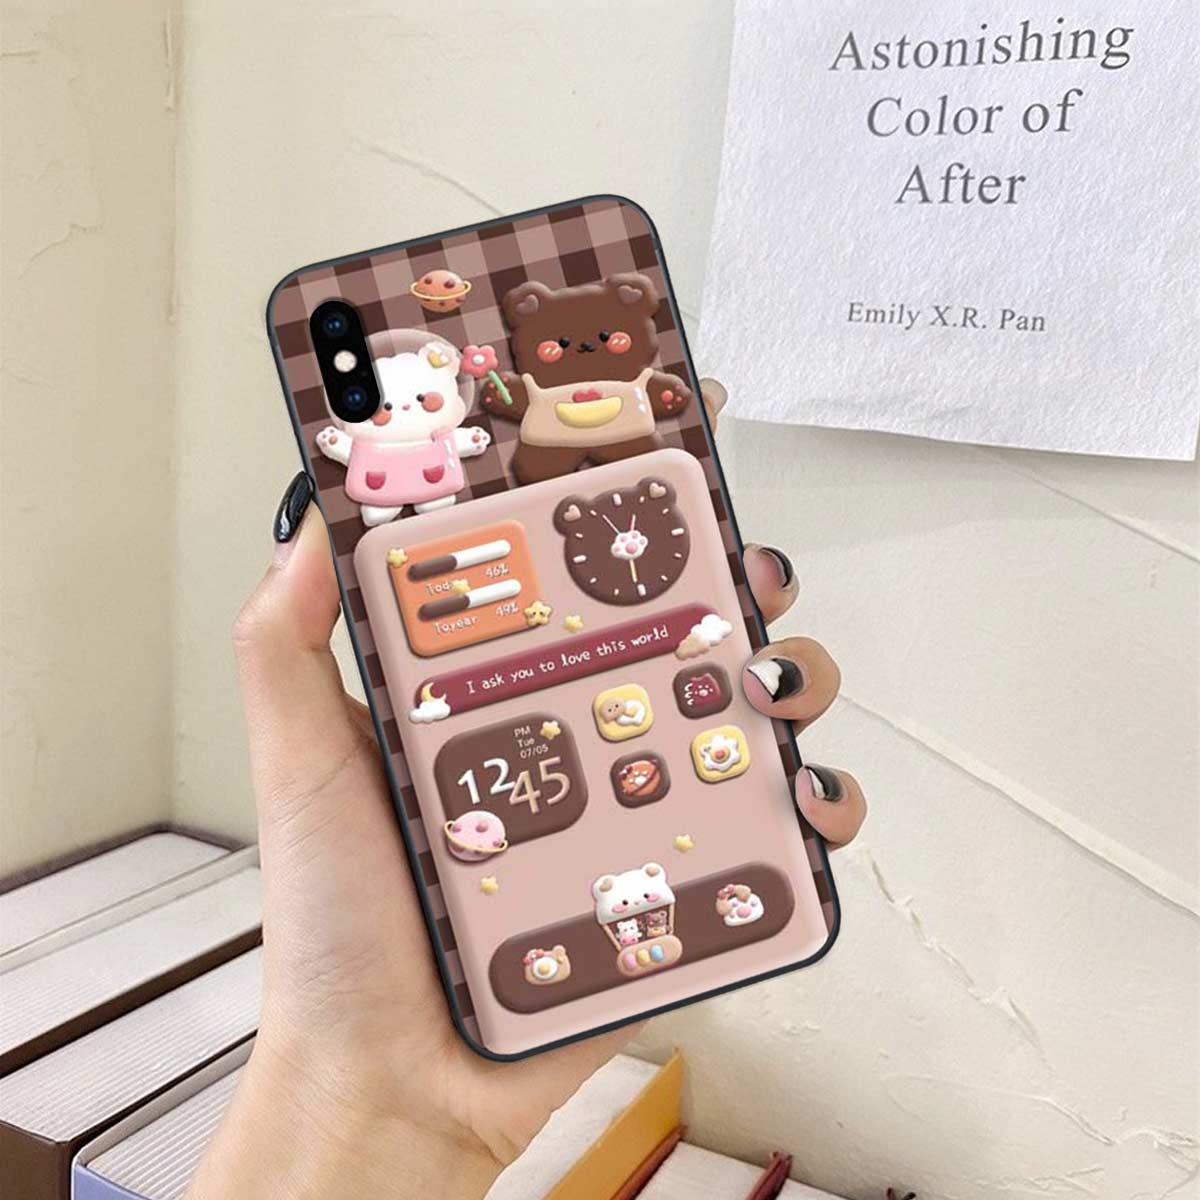 Bạn đang tìm kiếm một chiếc ốp iPhone xinh xắn và đáng yêu? Hãy xem hình ảnh liên quan để khám phá những mẫu ốp iPhone dễ thương và độc đáo. Với một ốp iPhone xinh cute, chiếc điện thoại của bạn sẽ trở nên thật nổi bật.